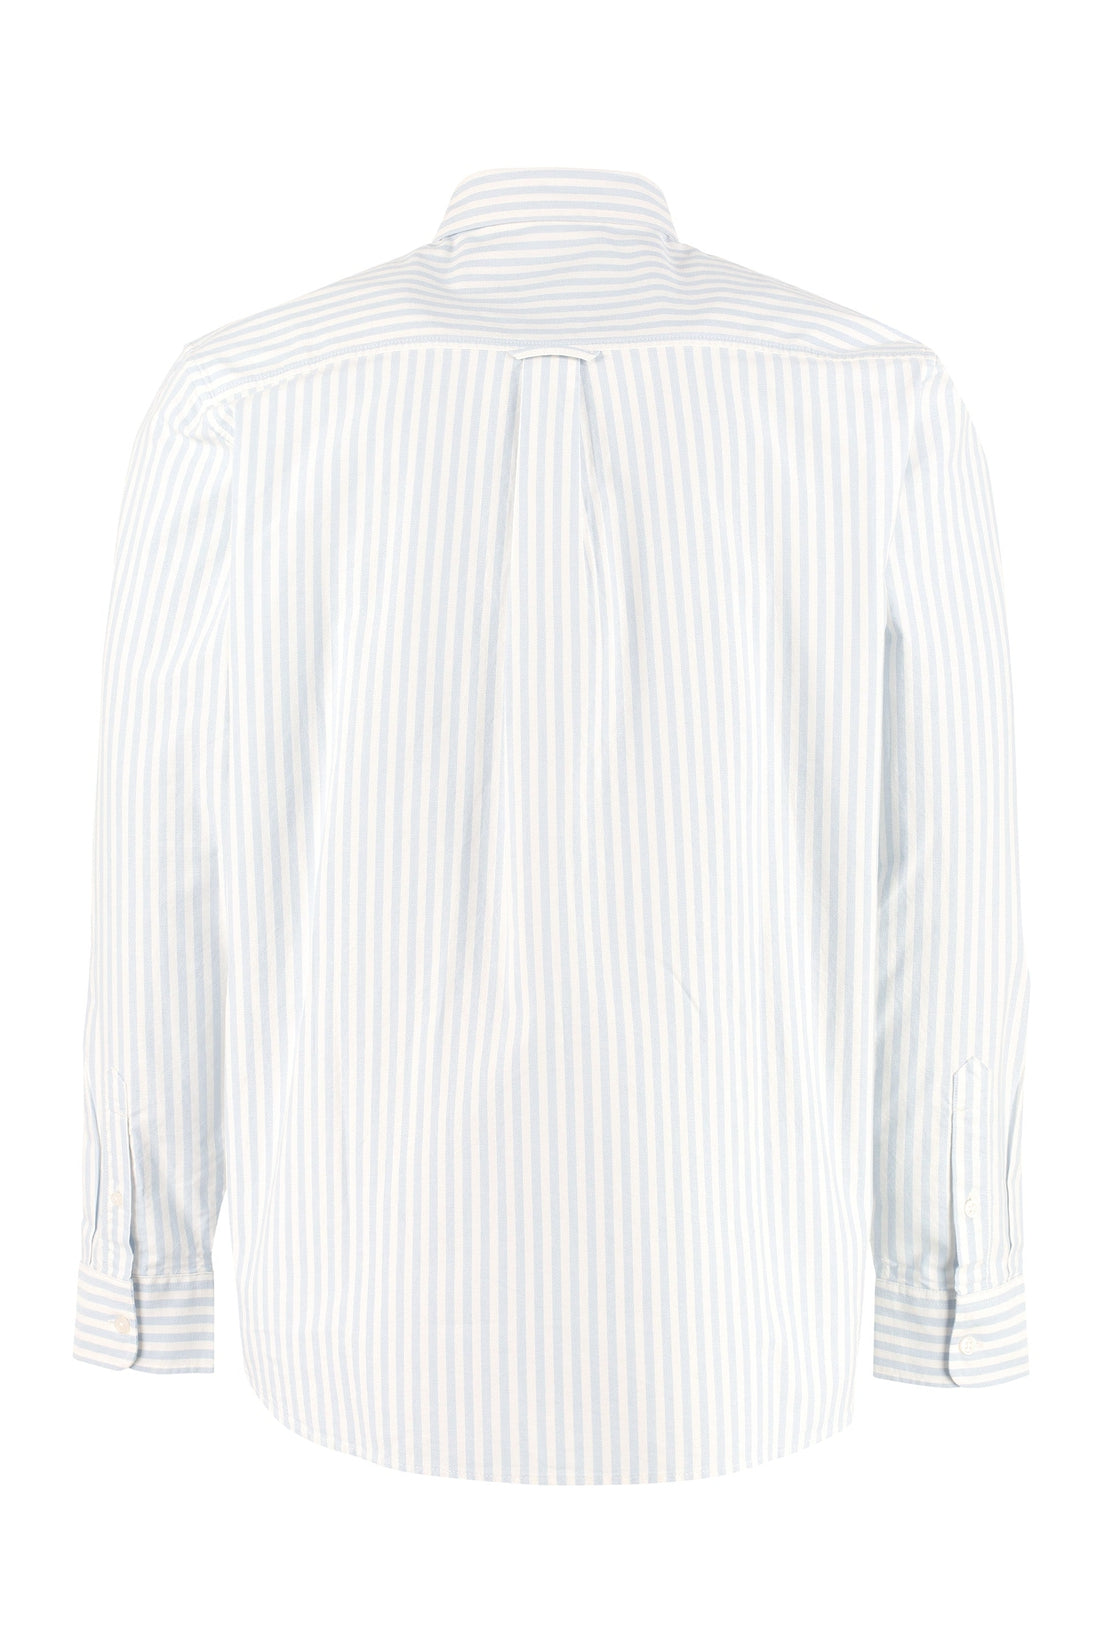 Carhartt-OUTLET-SALE-Simon cotton Oxford shirt-ARCHIVIST